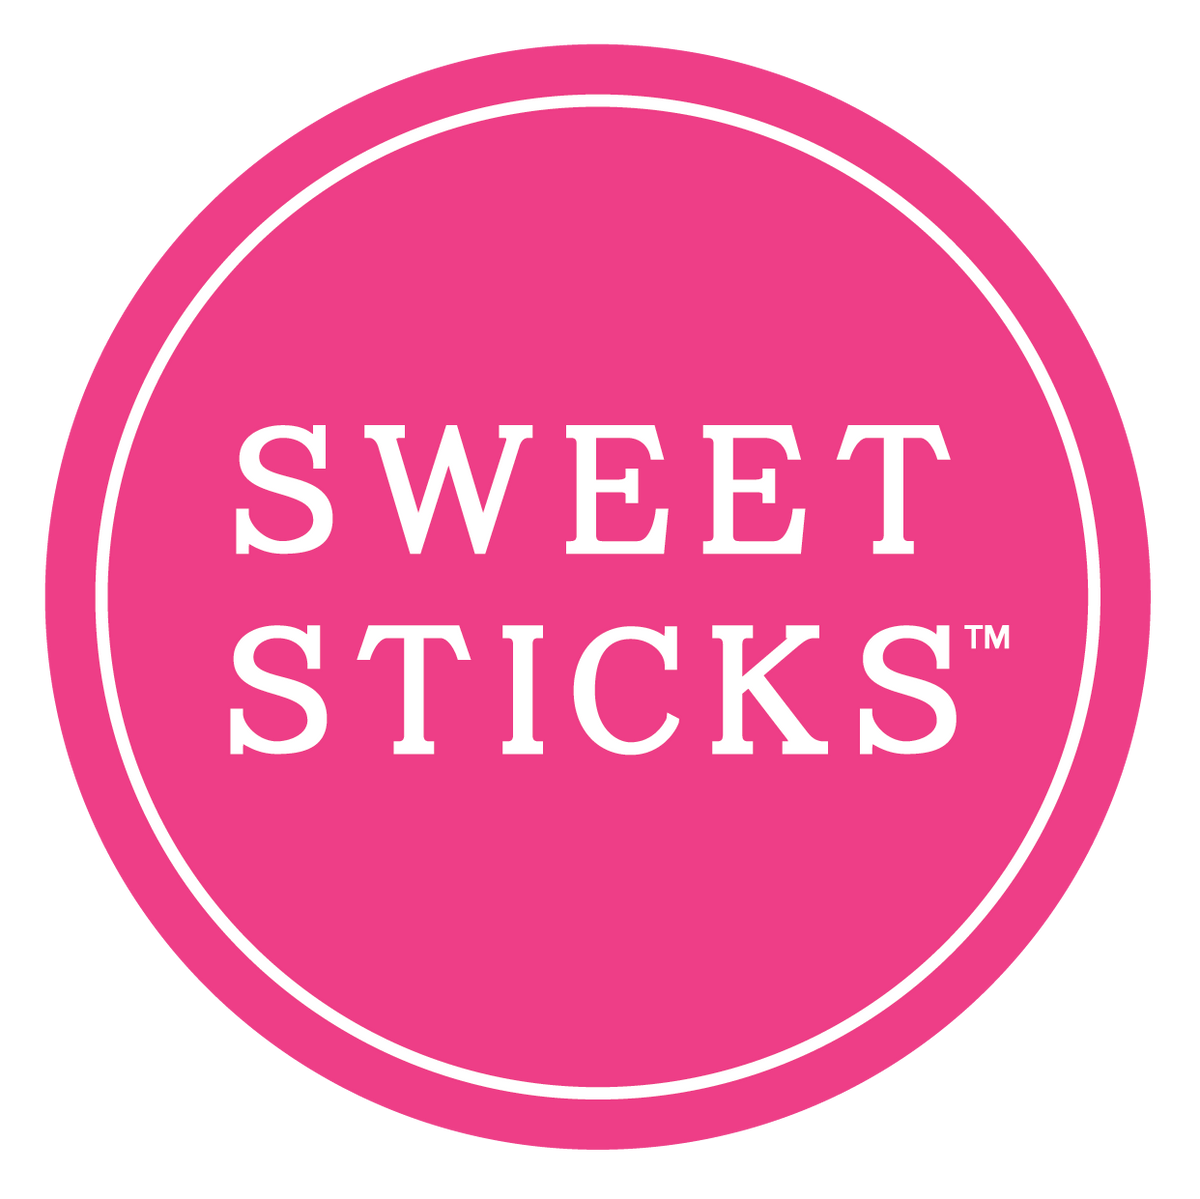 Sweet Sticks 2 Pack of Sponge Brushes